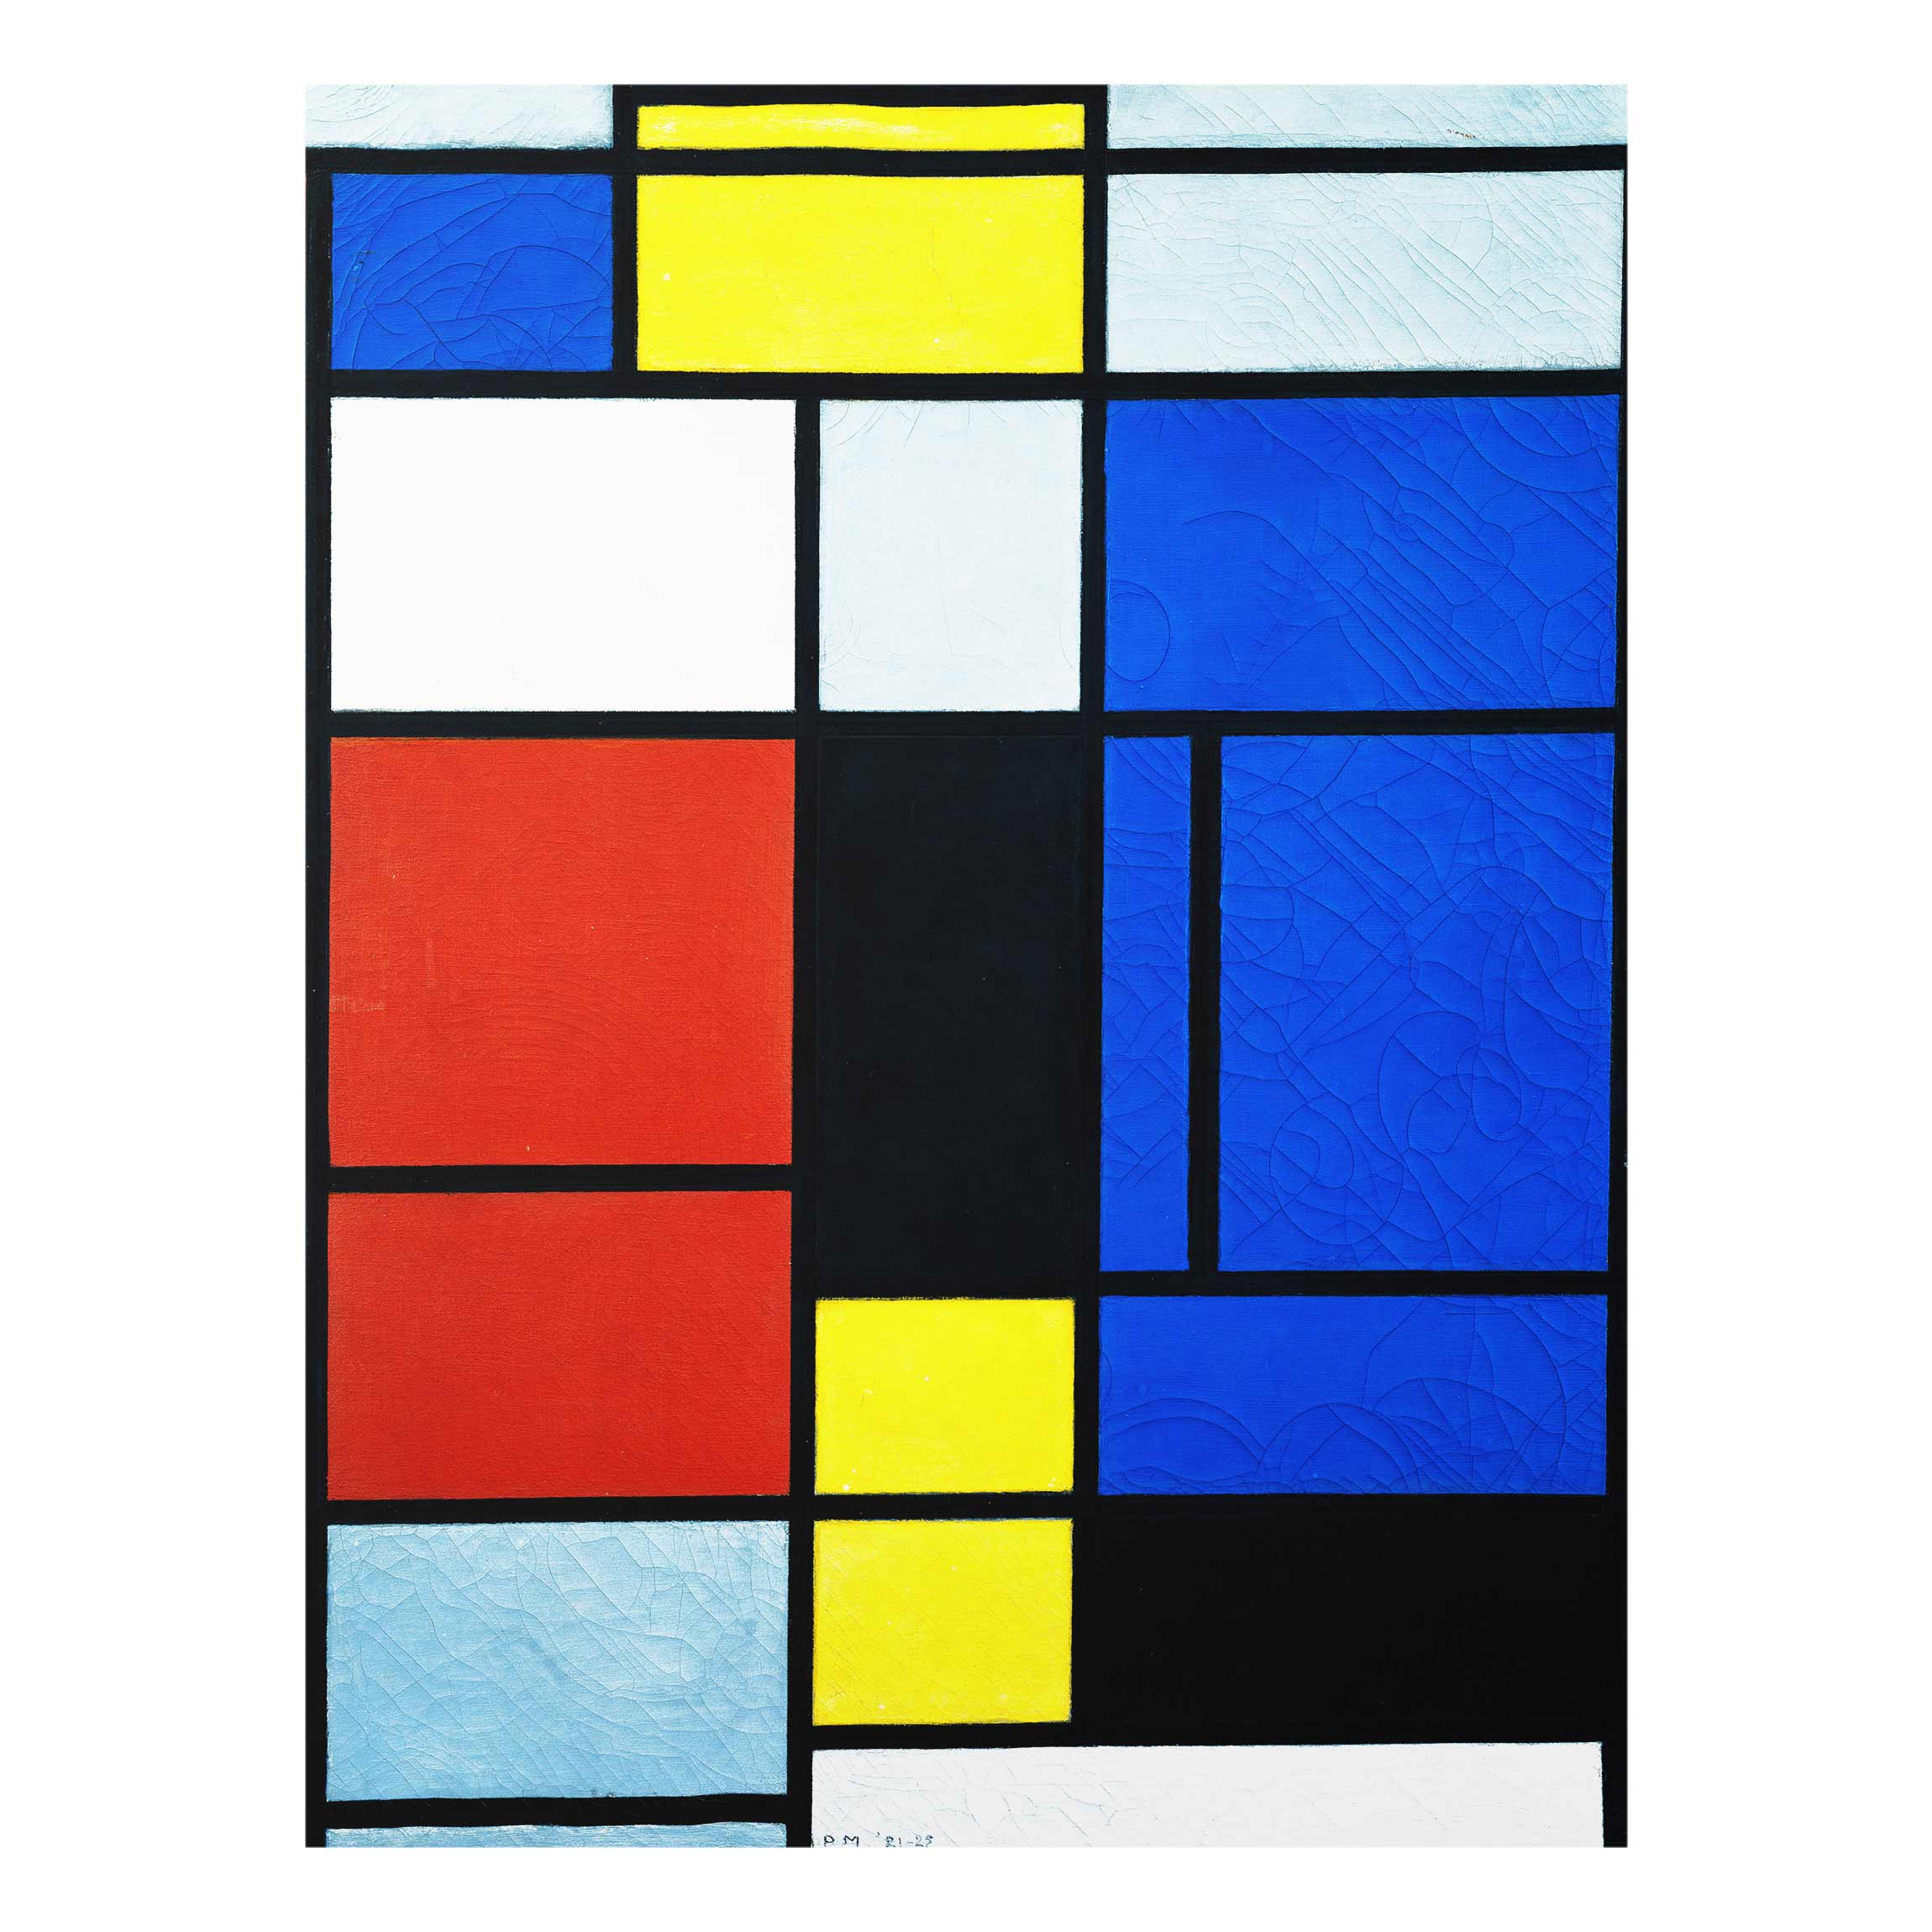 Piet Mondrian Wallpapers - Top Free Piet Mondrian Backgrounds ...